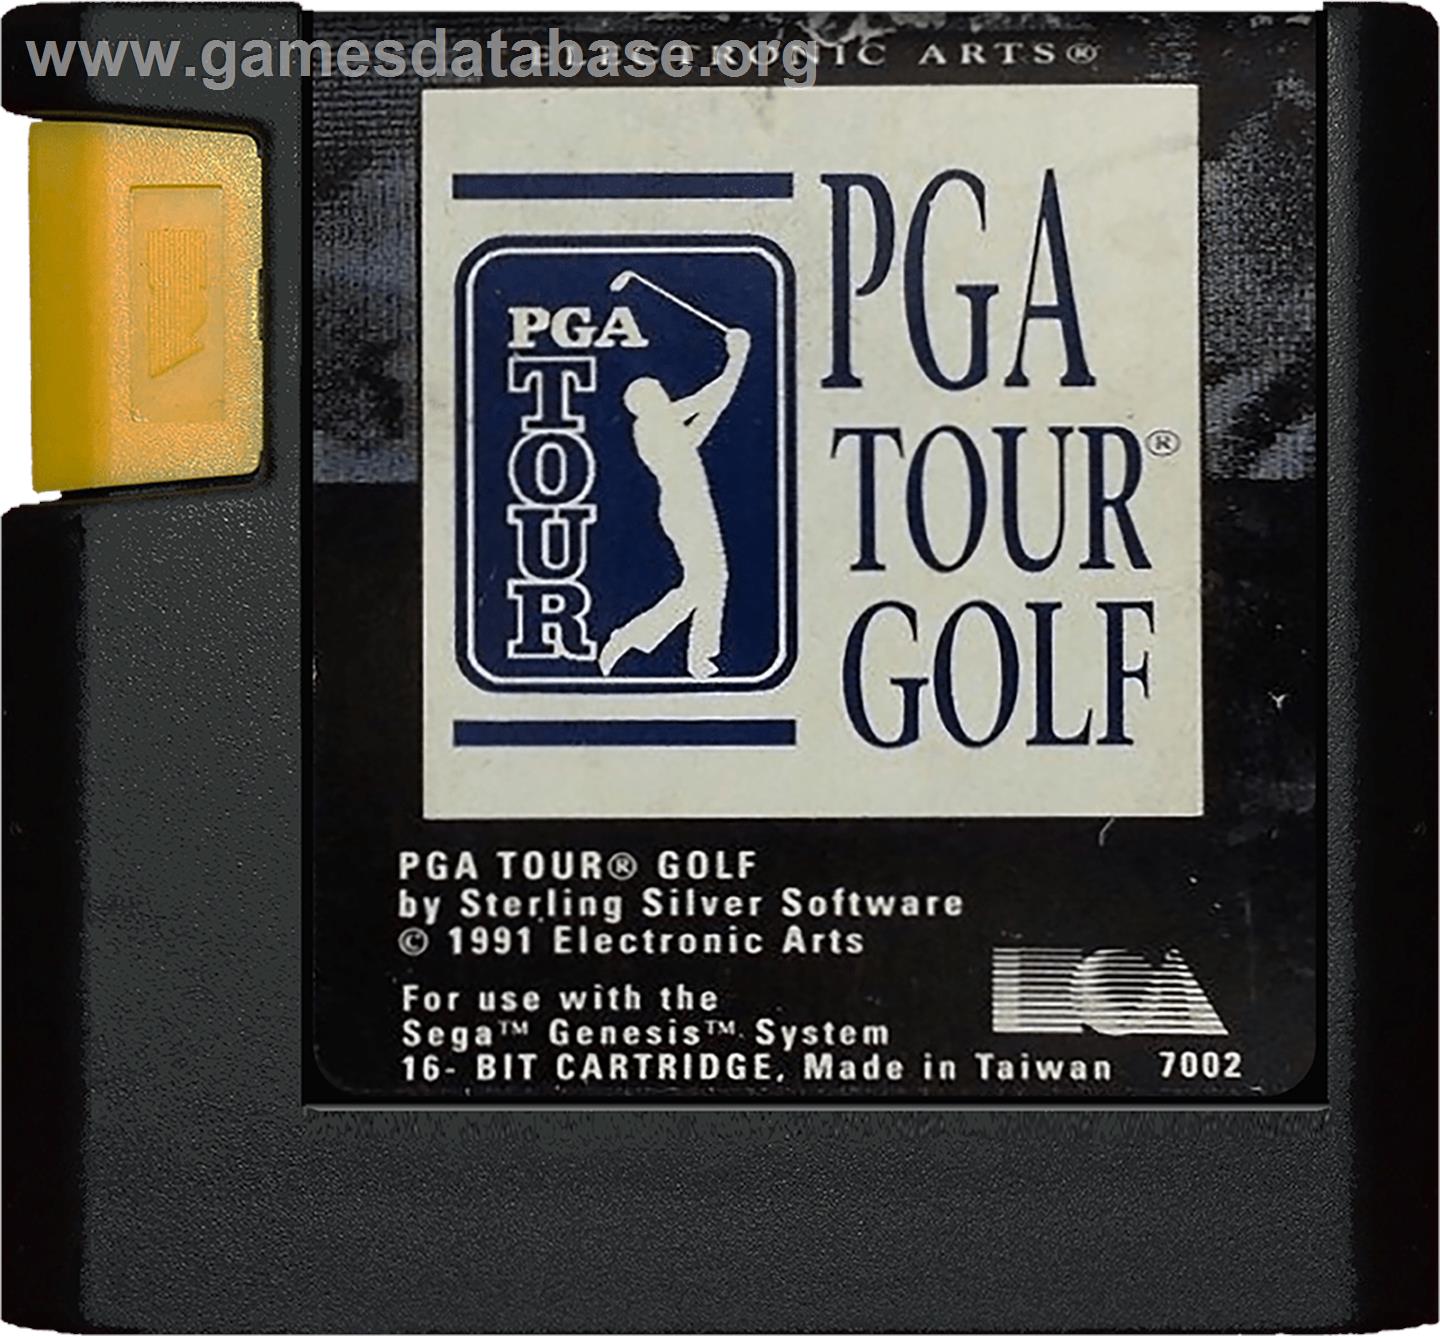 PGA Tour Golf - Sega Genesis - Artwork - Cartridge